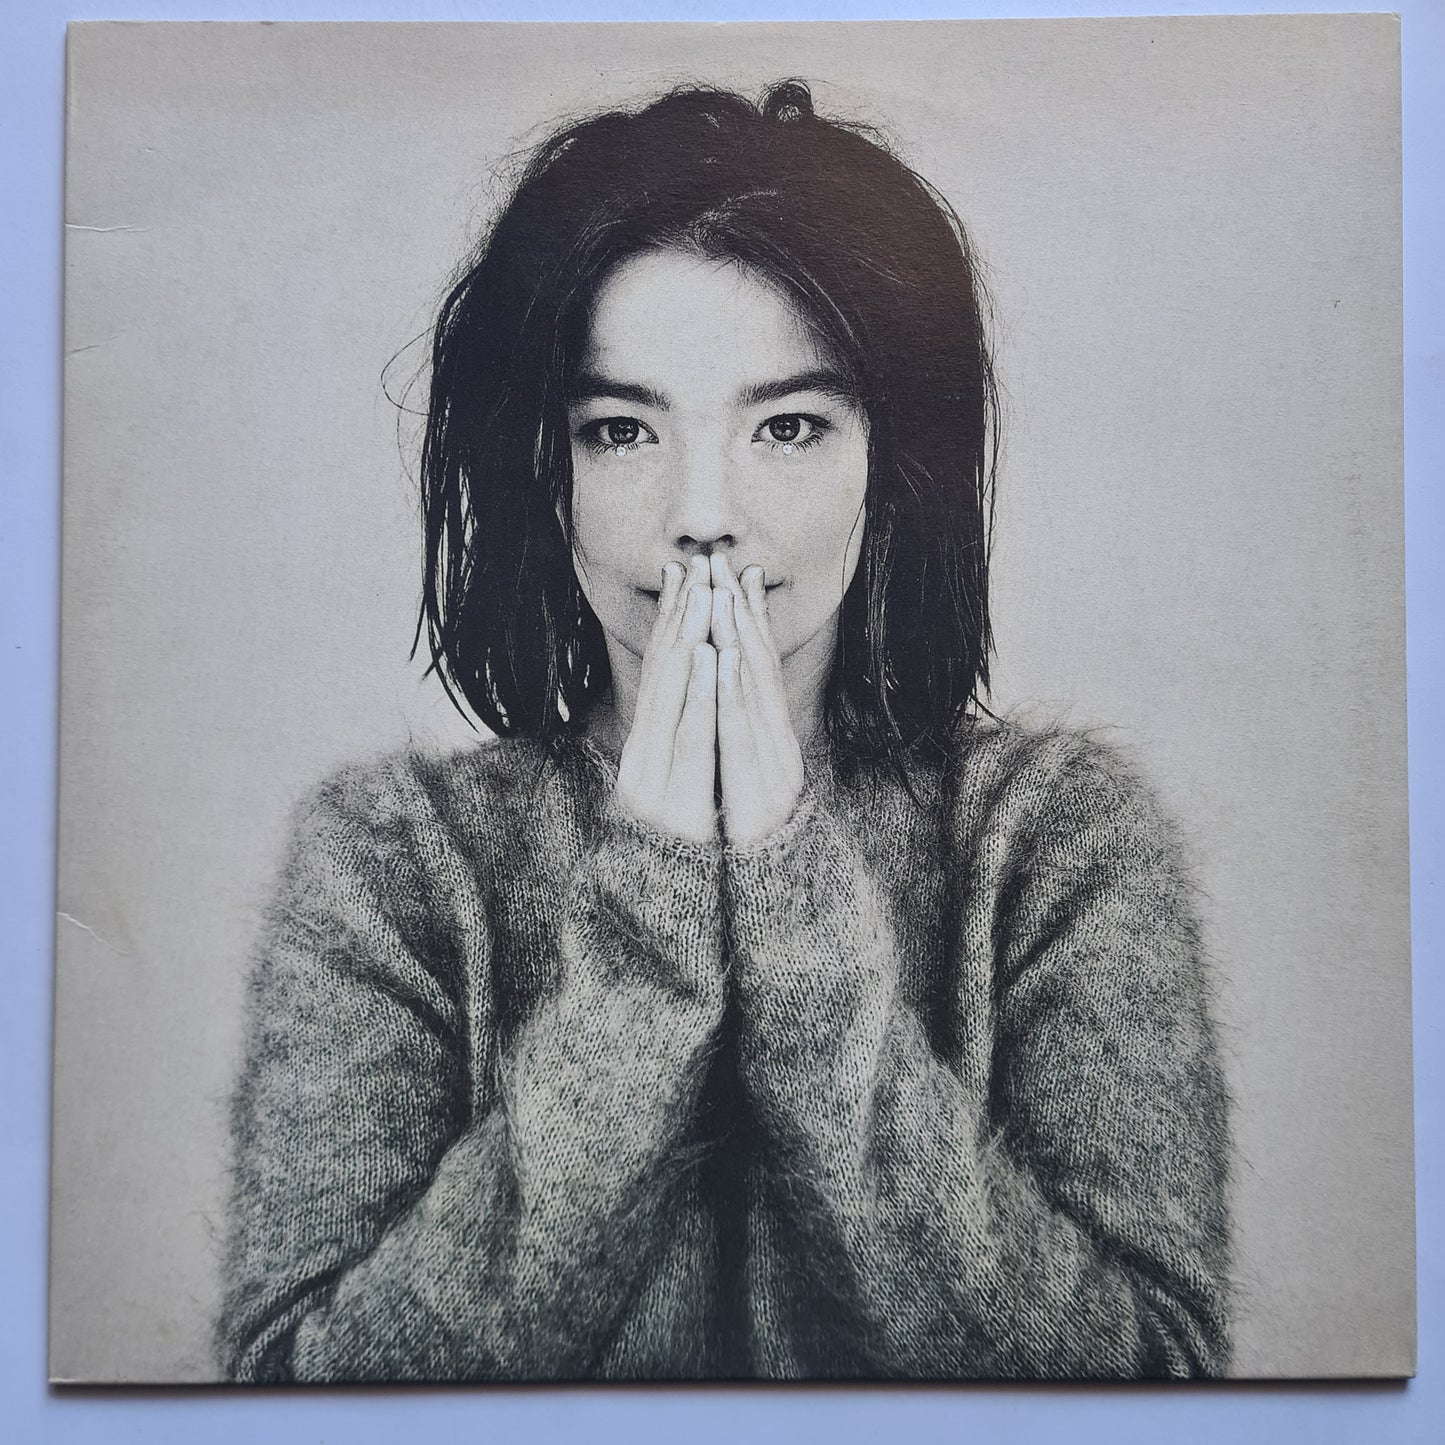 Björk – Debut - 1993 - German reissue Pressing - Vinyl Record